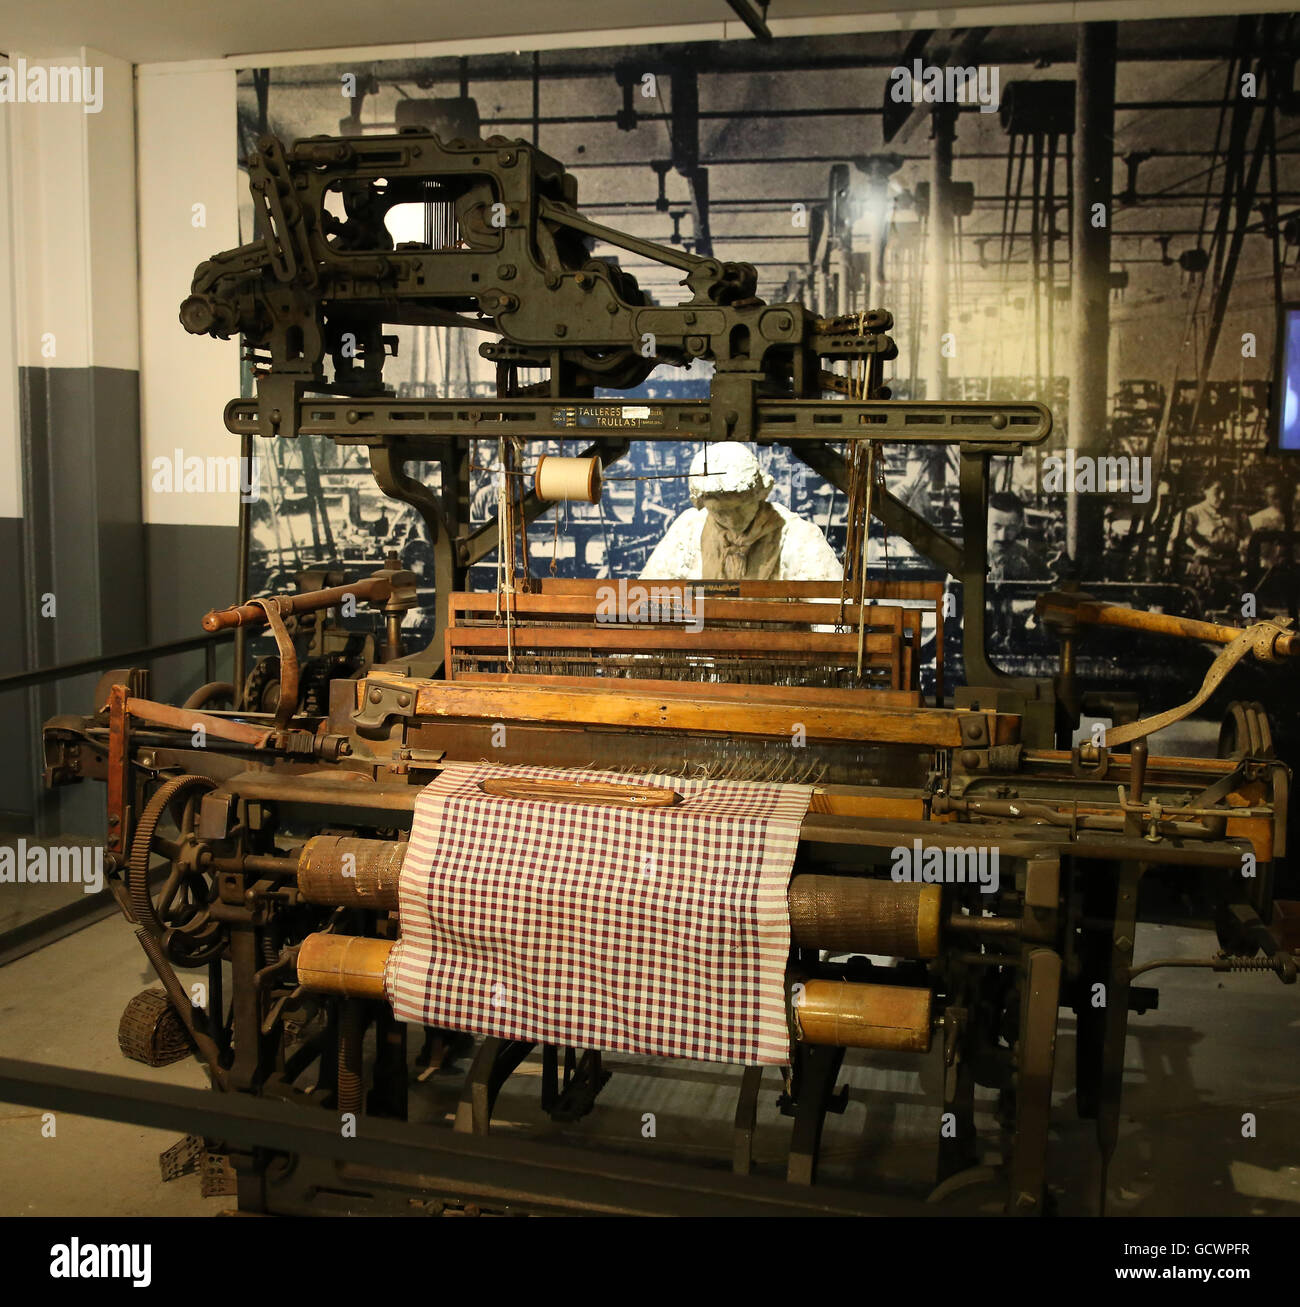 Textile Mills. Xix secolo. La donna ha lavorato nel settore tessile. La riproduzione. Spagna.Il Museo della Storia di Catalunya, Barcelona Foto Stock